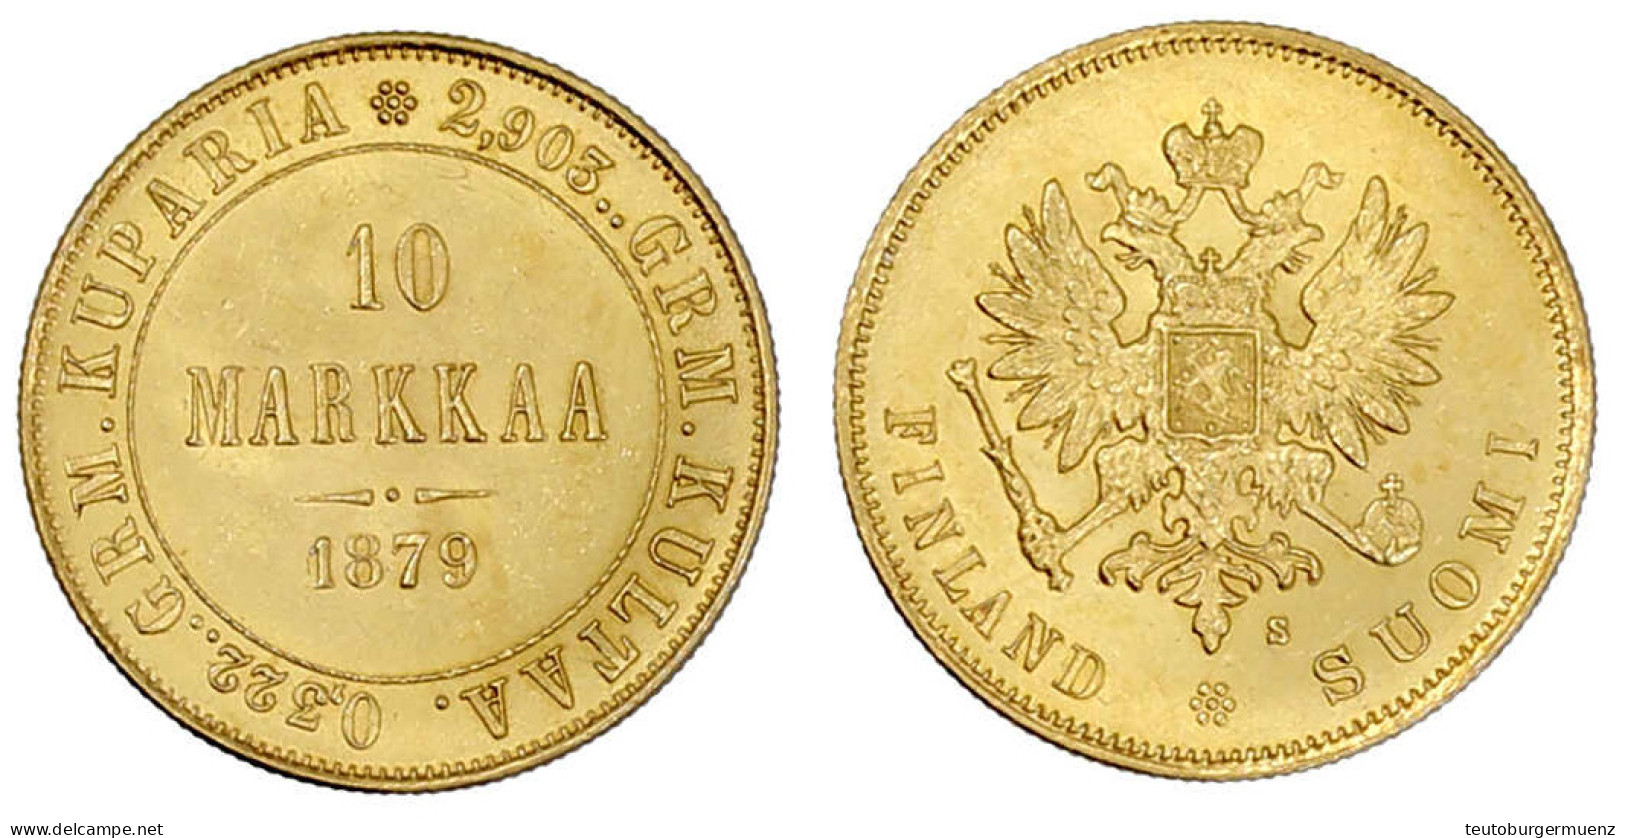 10 Markkaa 1879. 3,23 G. 900/1000. Vorzüglich/Stempelglanz. Bitkin 615. Krause/Mishler 8.1. - Finland